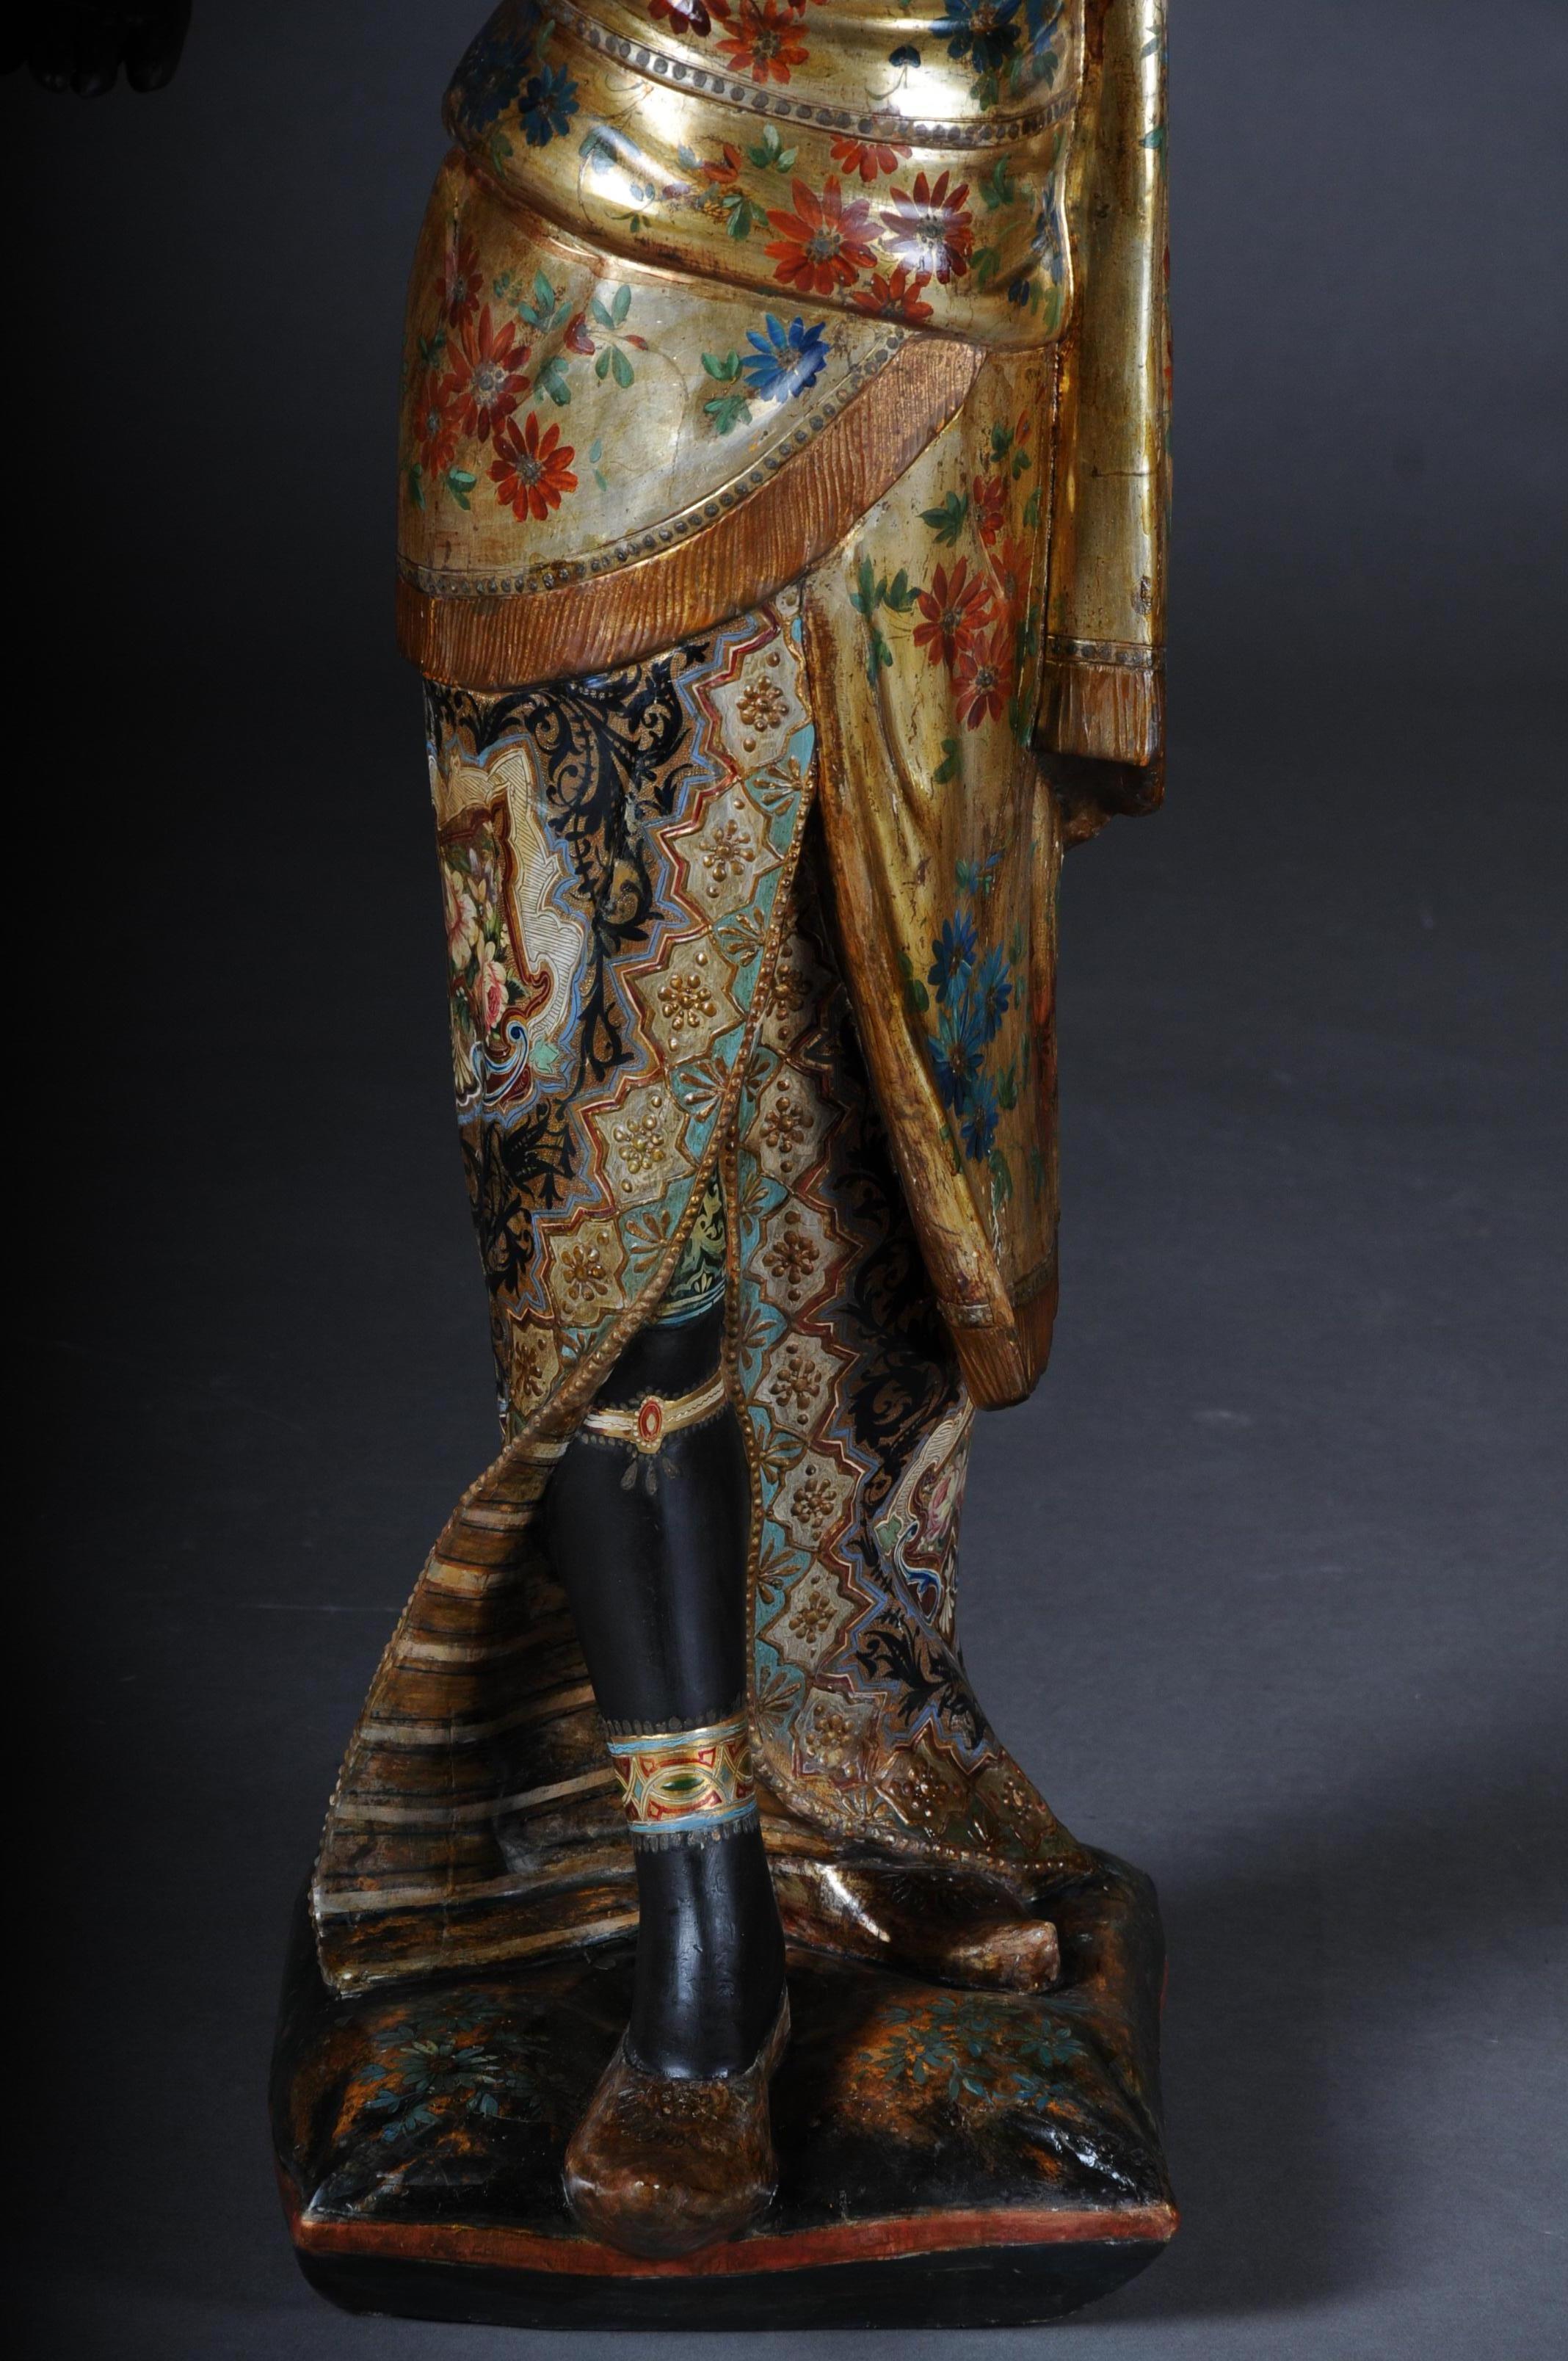 lustre vénitien ancien de Mohren du 19ème siècle en bois sculpté

Debout sur des coussins, en robe orientale, avec dans sa main droite un bol à feu en guise de bougeoir. Probablement Italie du Nord / Venise, fin du XIXe siècle
Peinture féerique